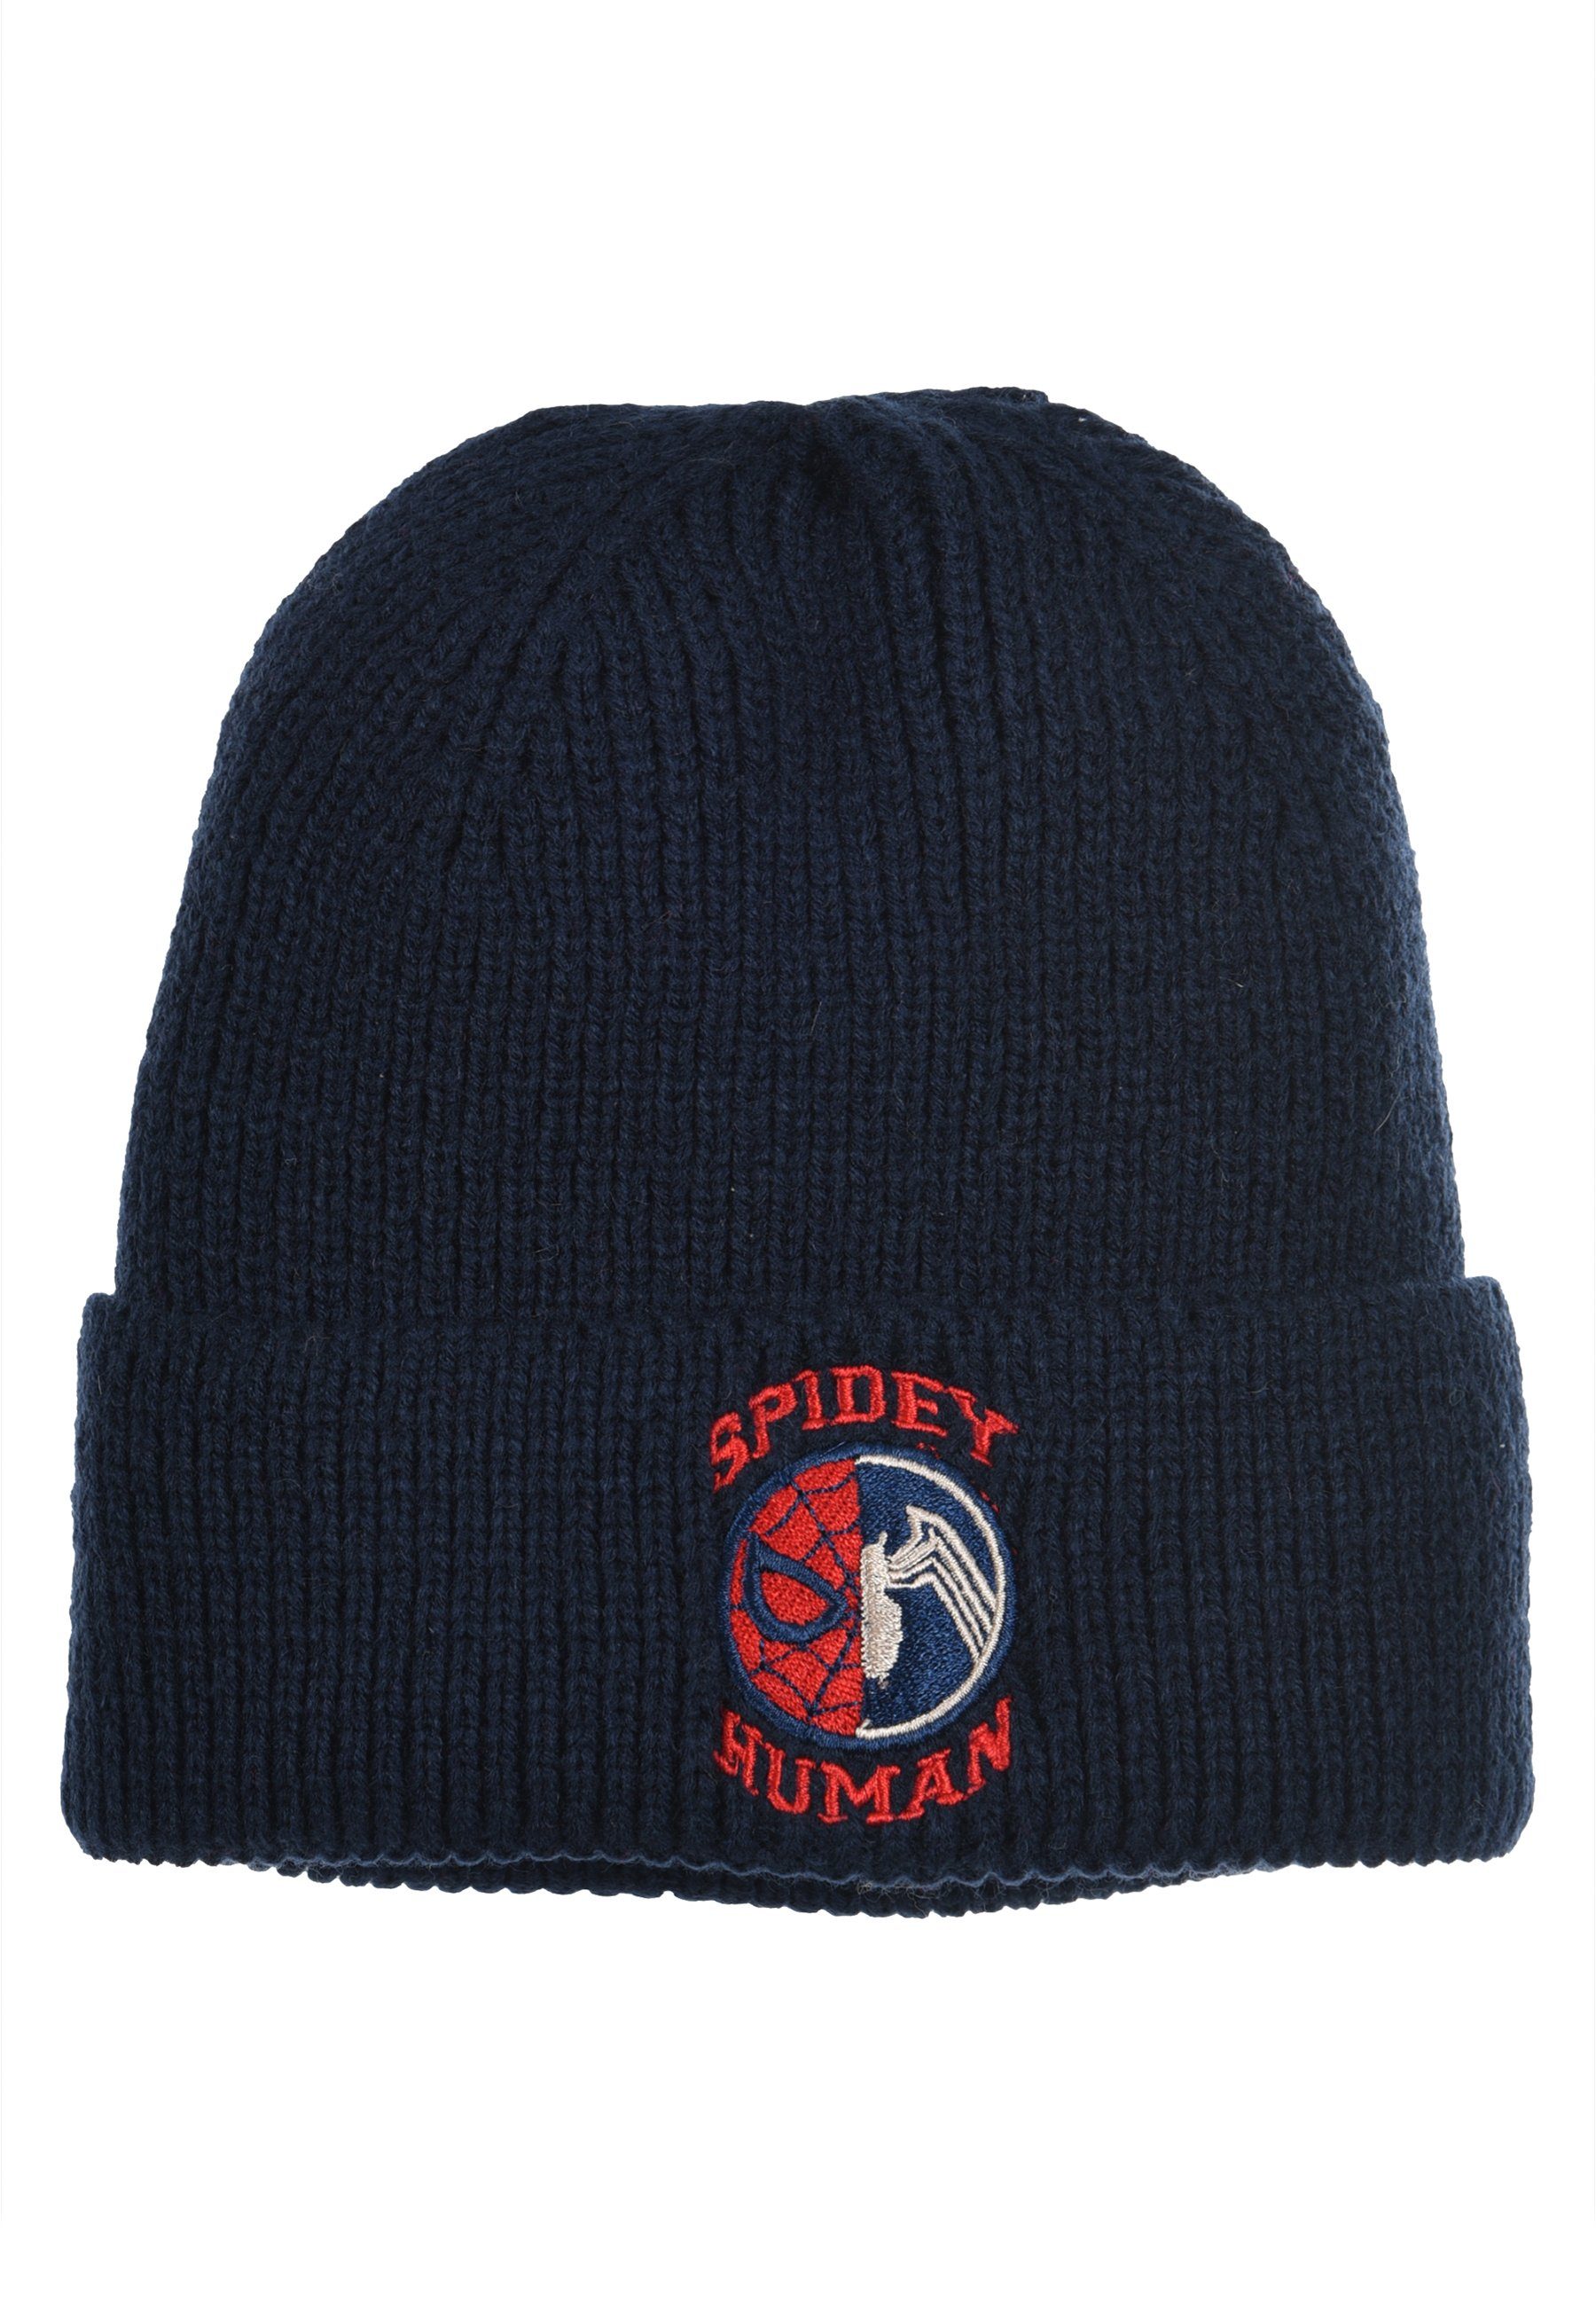 Winter-Mütze Spiderman Jungen Kinder Strickmützte Dunkel-Blau Beanie